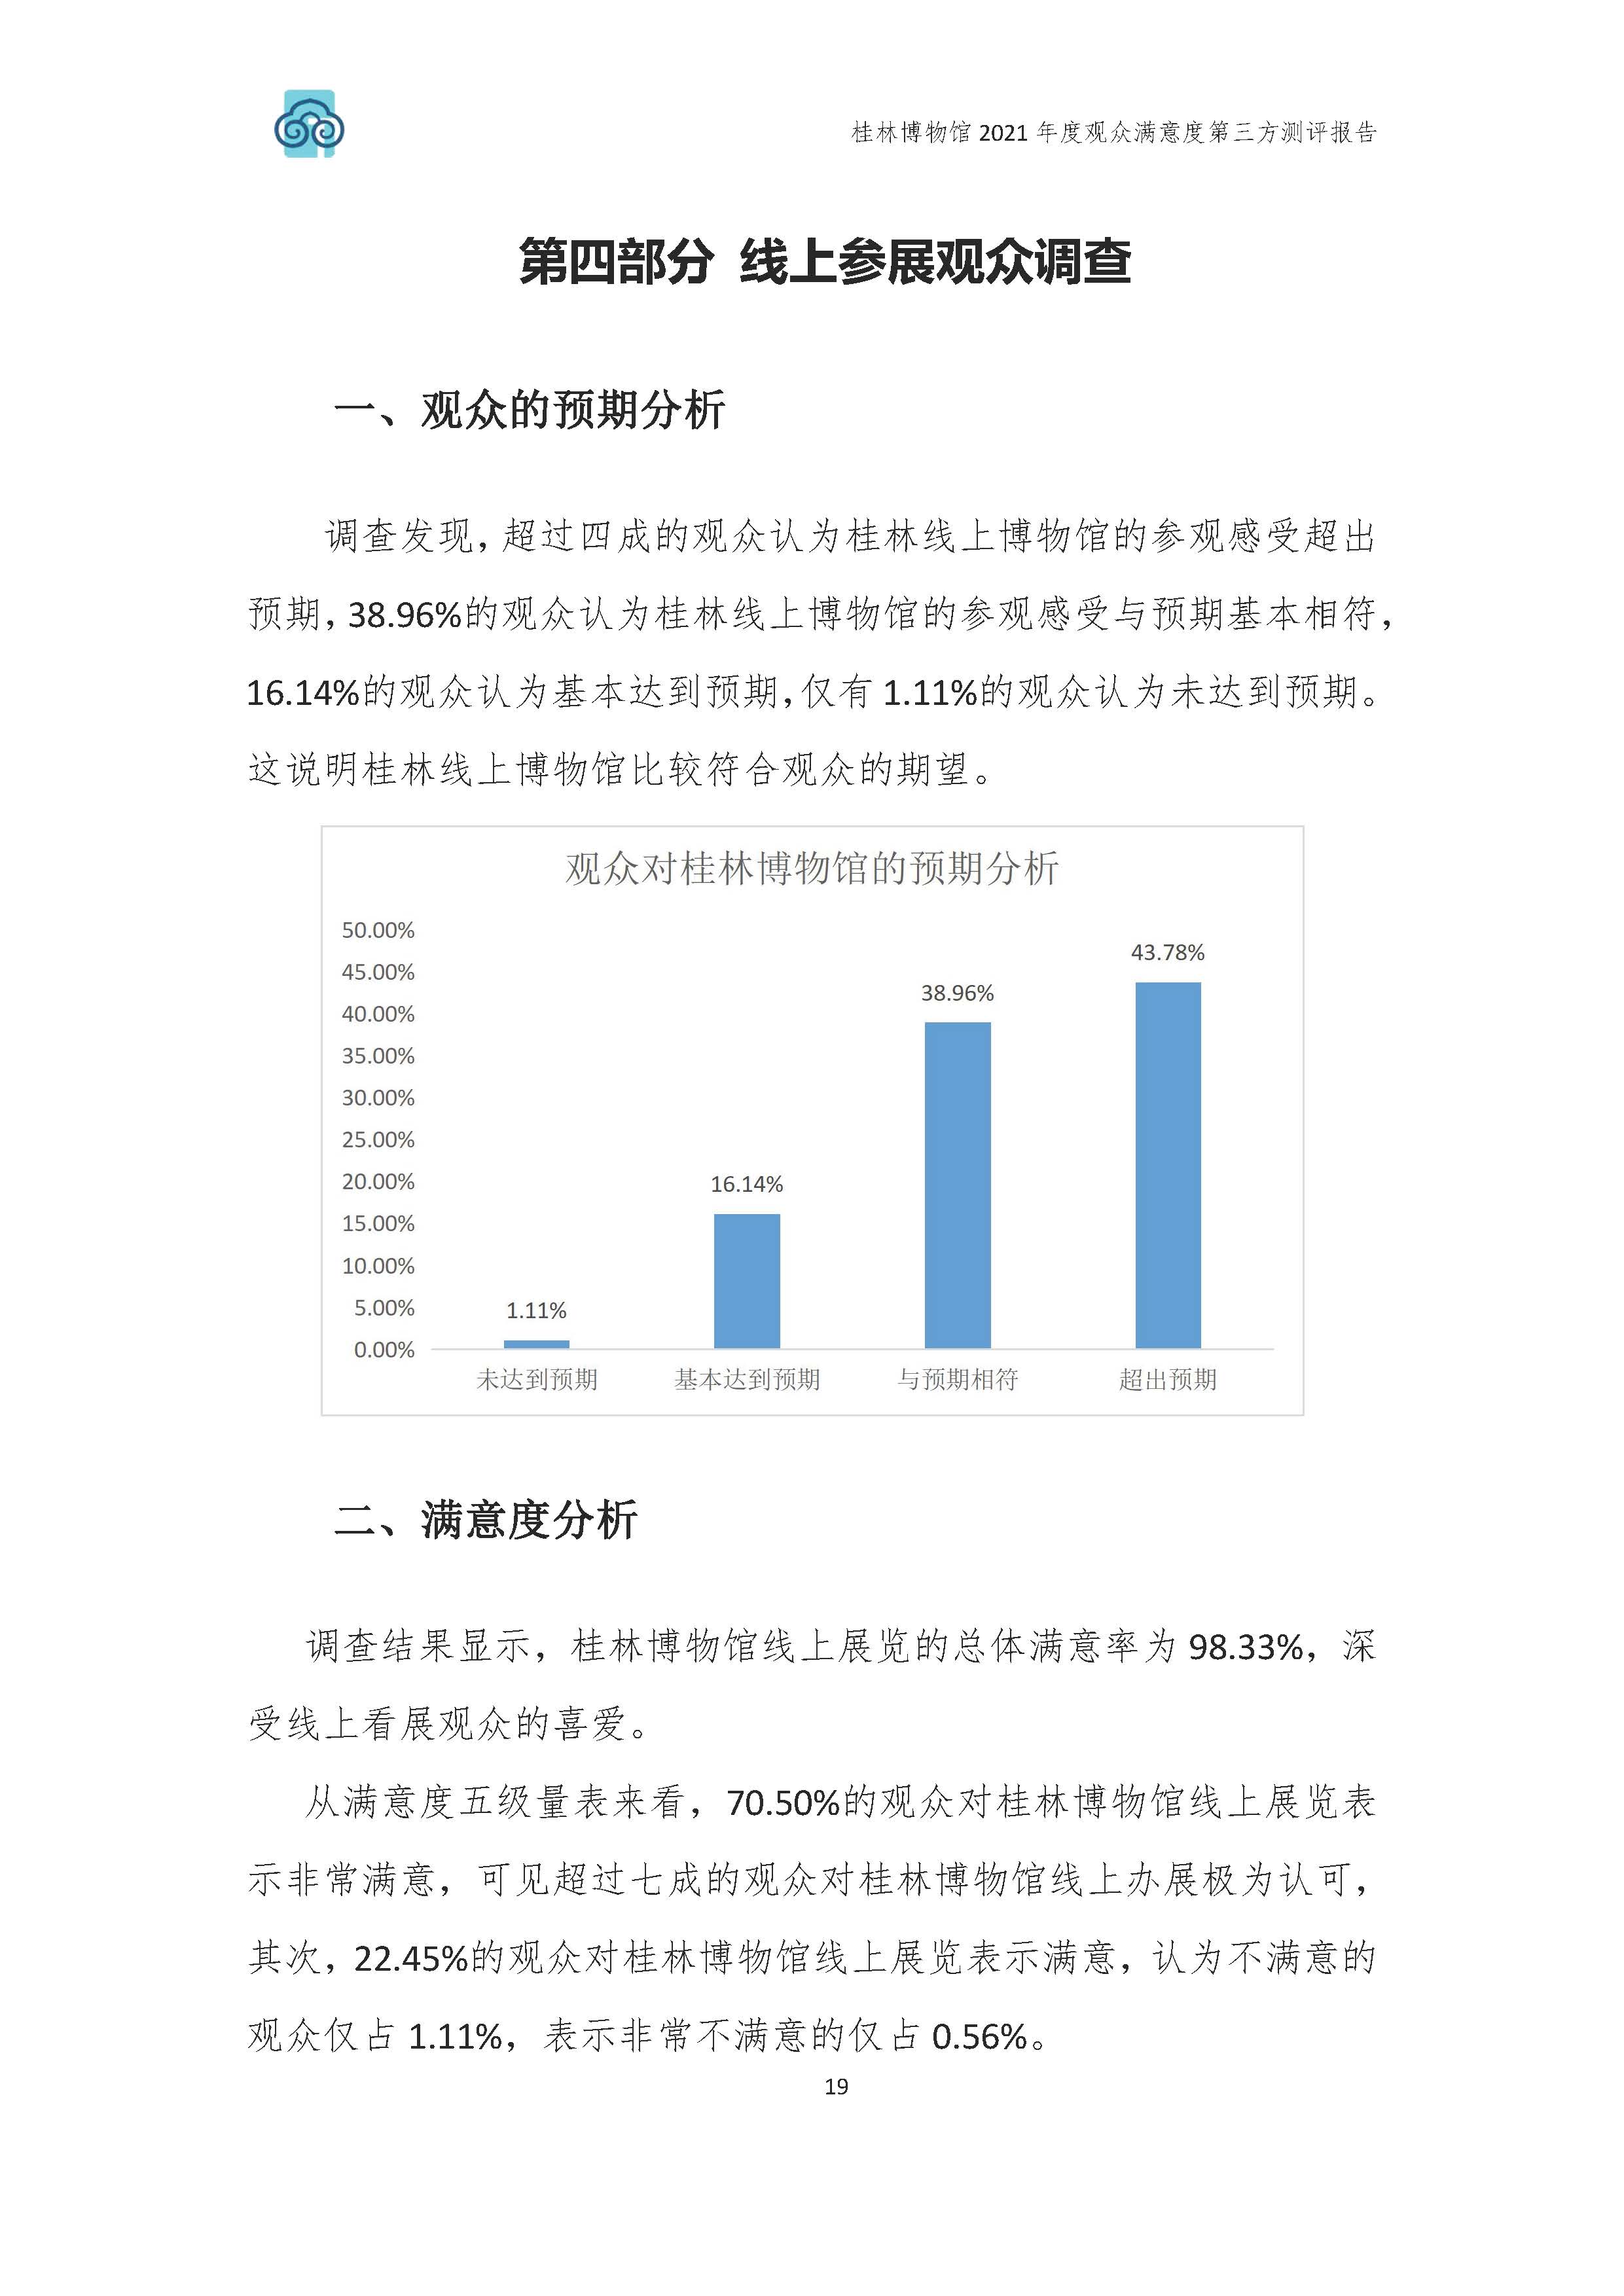 2021年桂林博物馆参观观众满意度调查报告_v3_页面_22.jpg